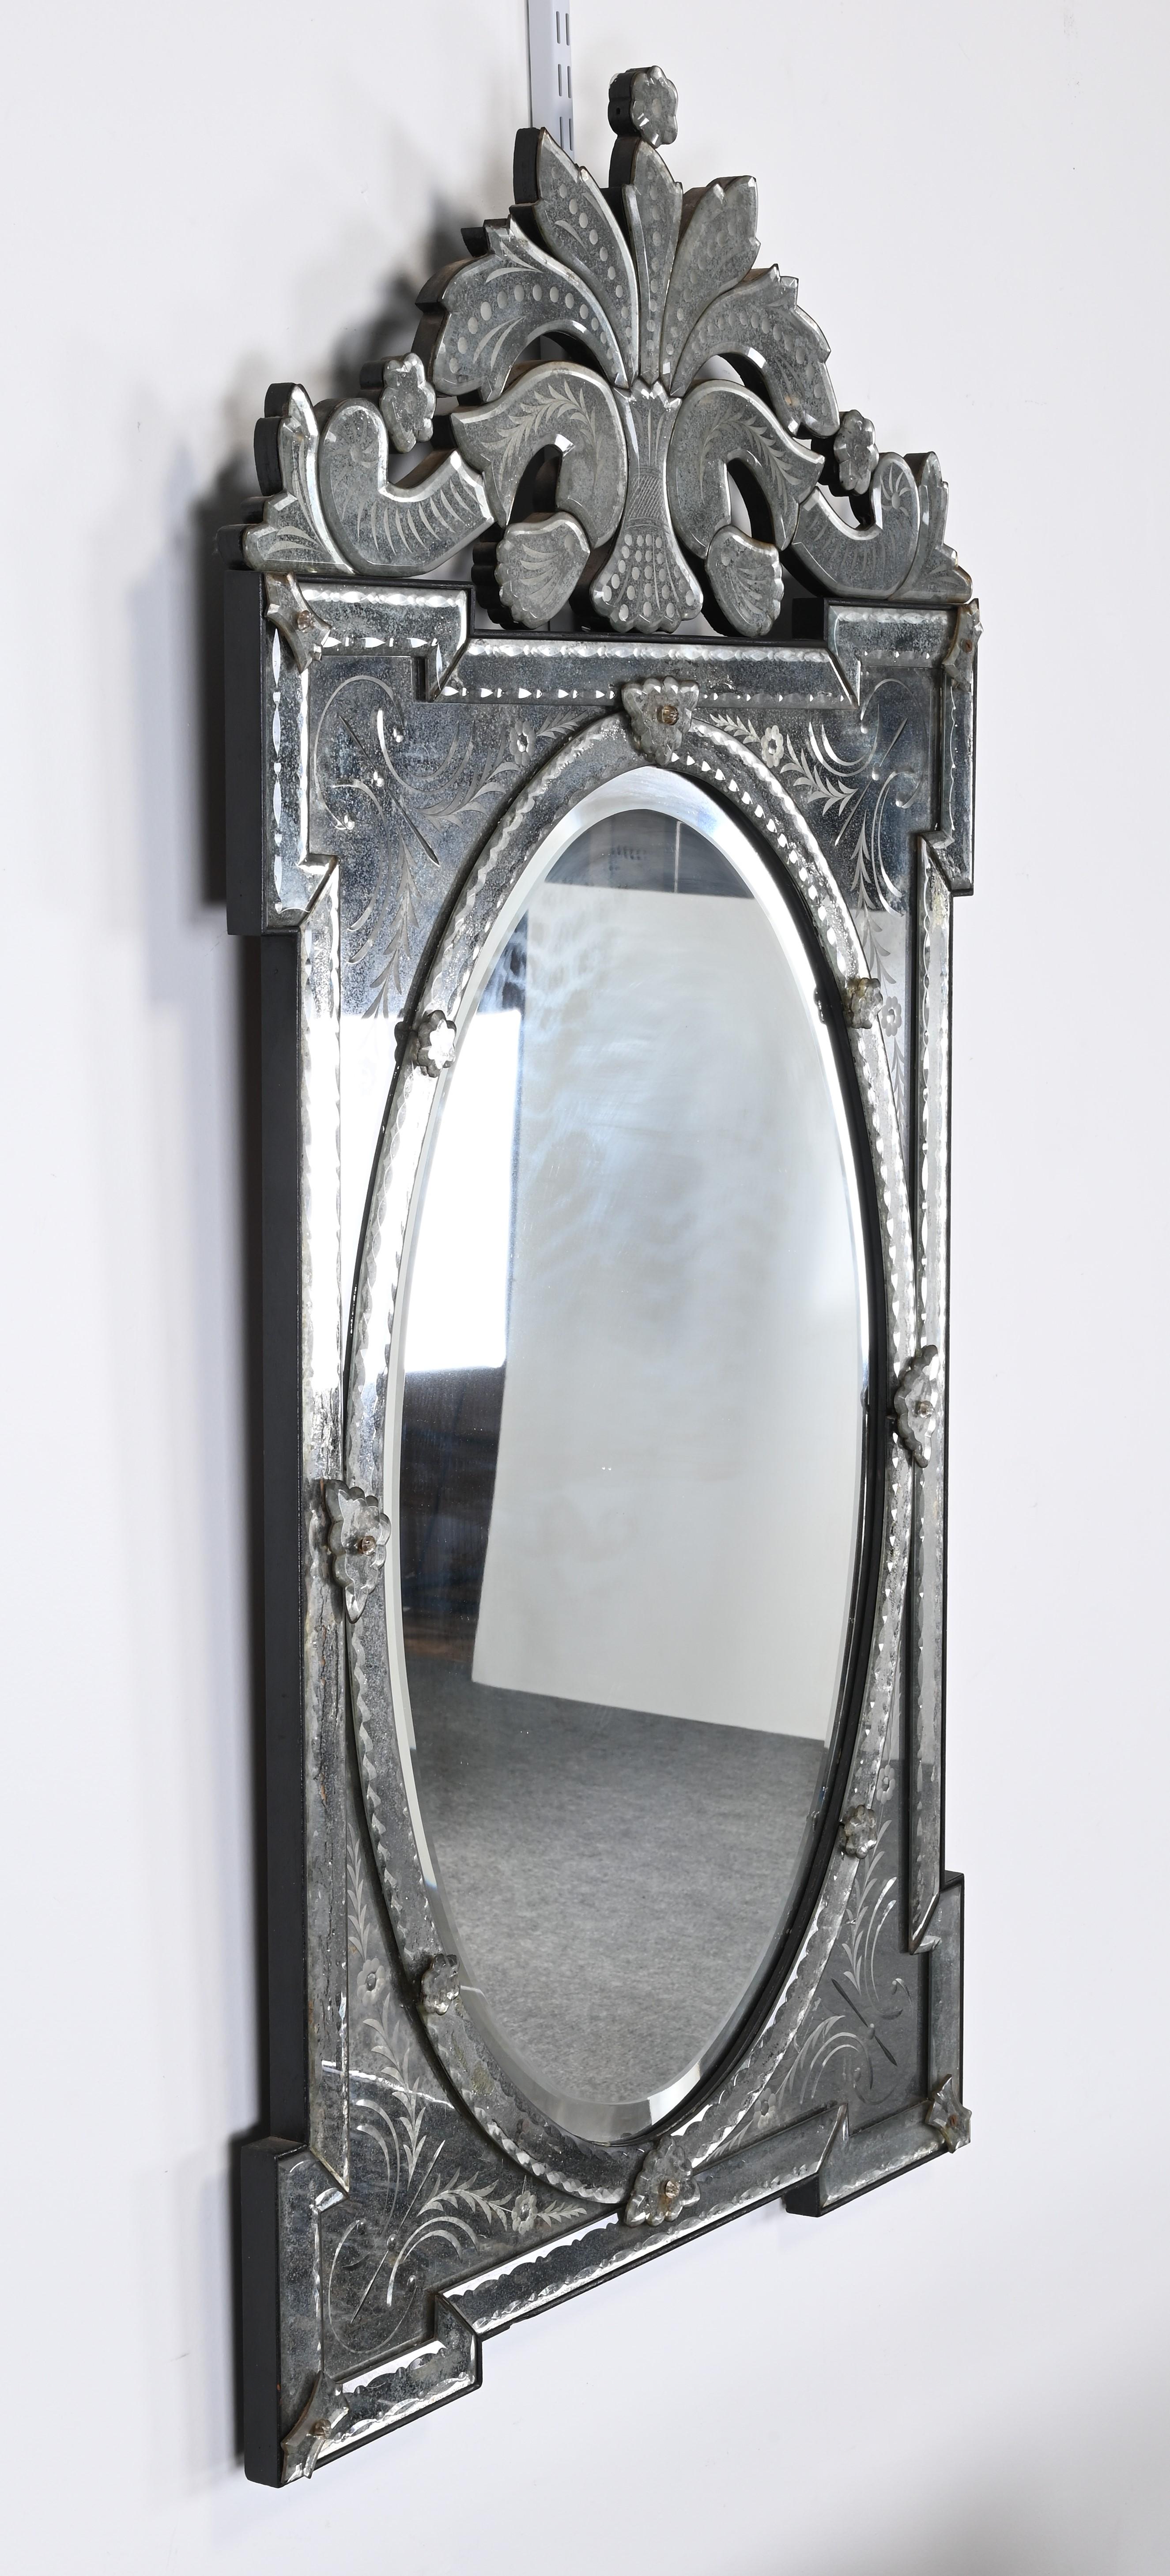 Magnifique miroir mural vénitien italien antiquisé et gravé, vers 1950-1960. Ce magnifique miroir vintage conviendrait parfaitement à un décor de style régence hollywoodienne, traditionnel ou même contemporain. Le miroir complexe est d'une grande